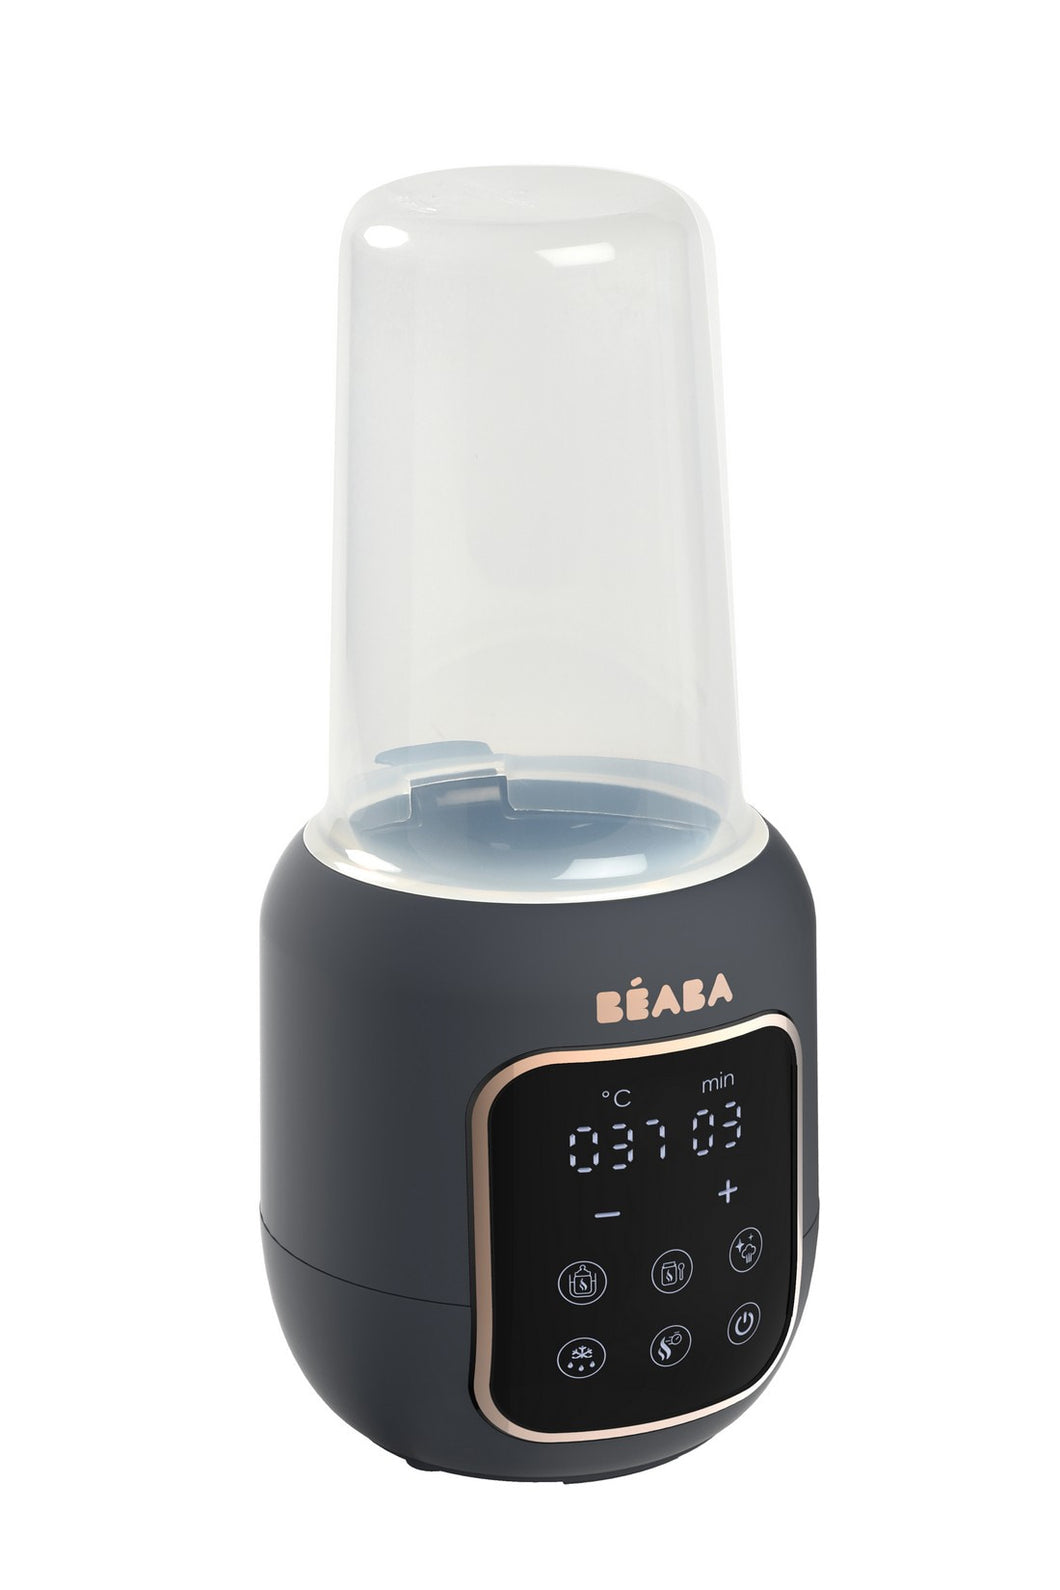 Beaba Multi Milk 5 in 1 Bottle Warmer 1